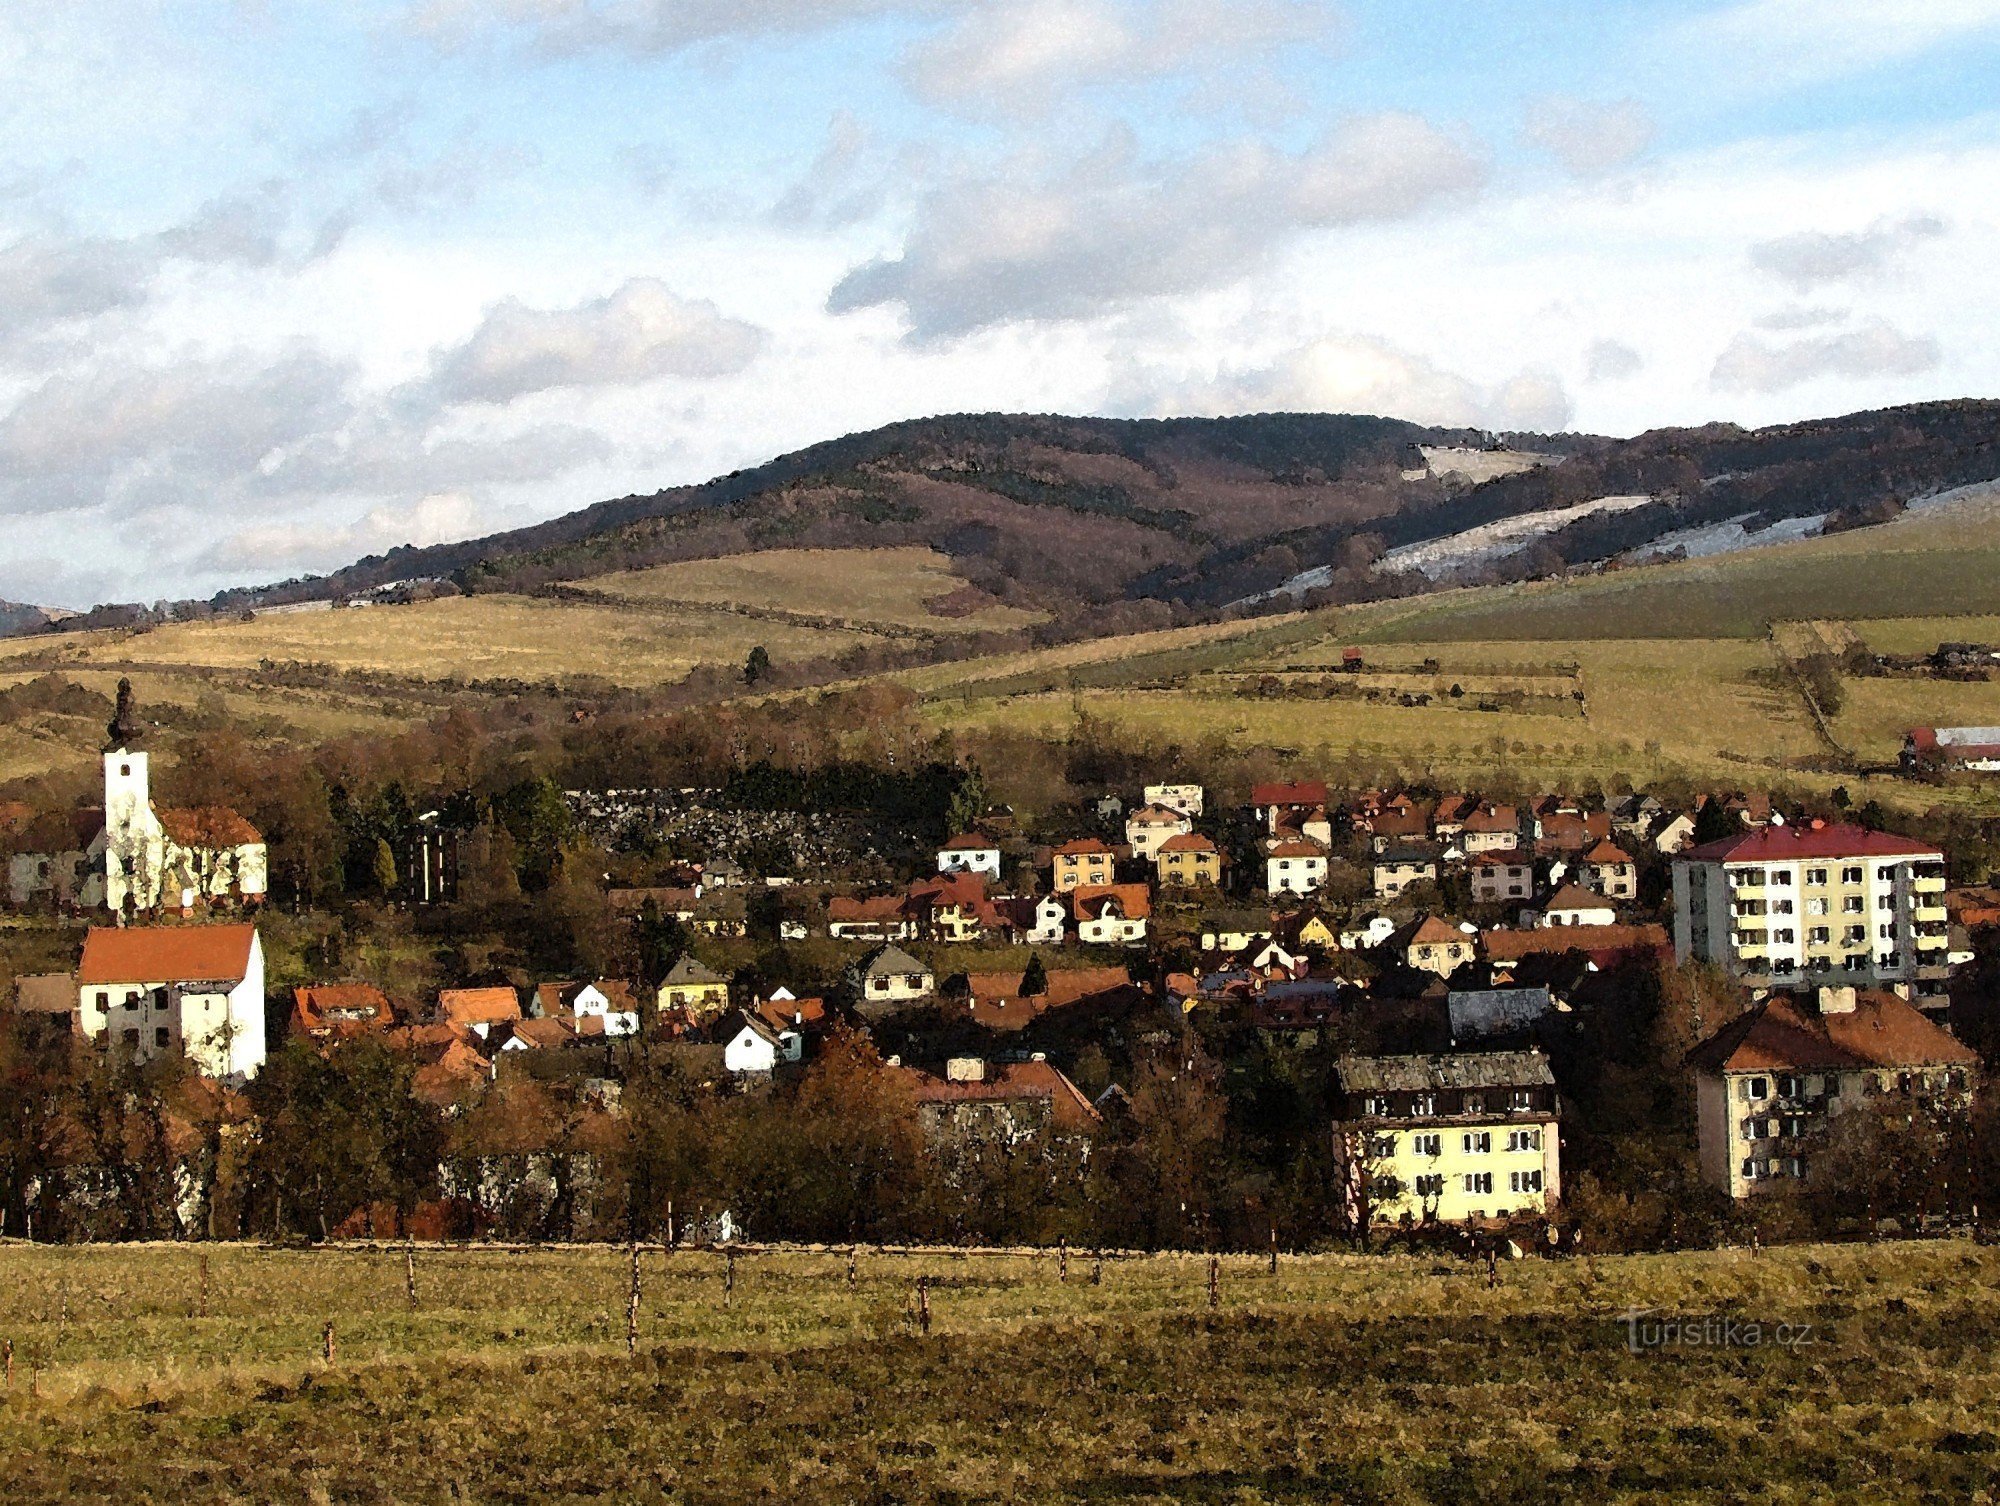 la città di Brumov - Bylnice sullo sfondo con Holý vrch